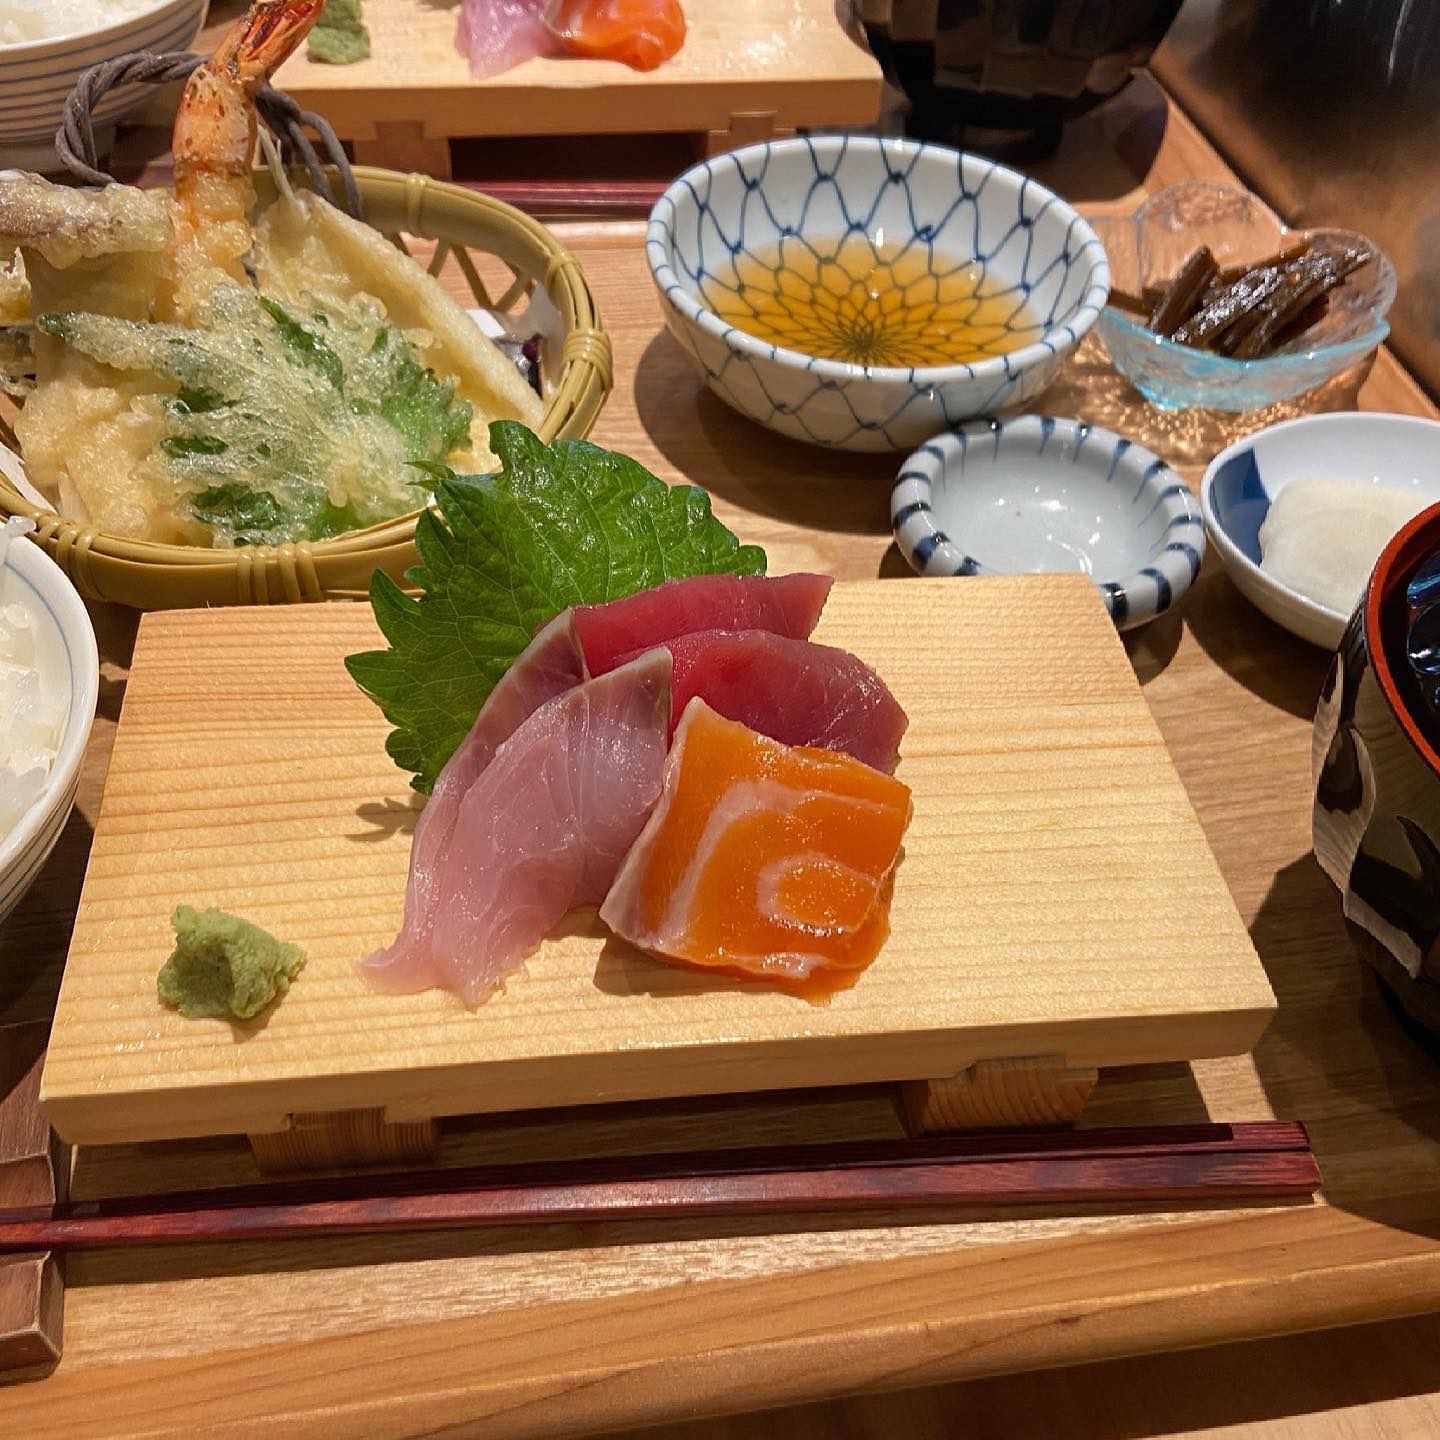 明日の日替わりは、お刺身と天ぷら定食になります。

明日もランチのみ営業となります

よろしくお願いします。

#埼玉県熊谷市新堀737-3